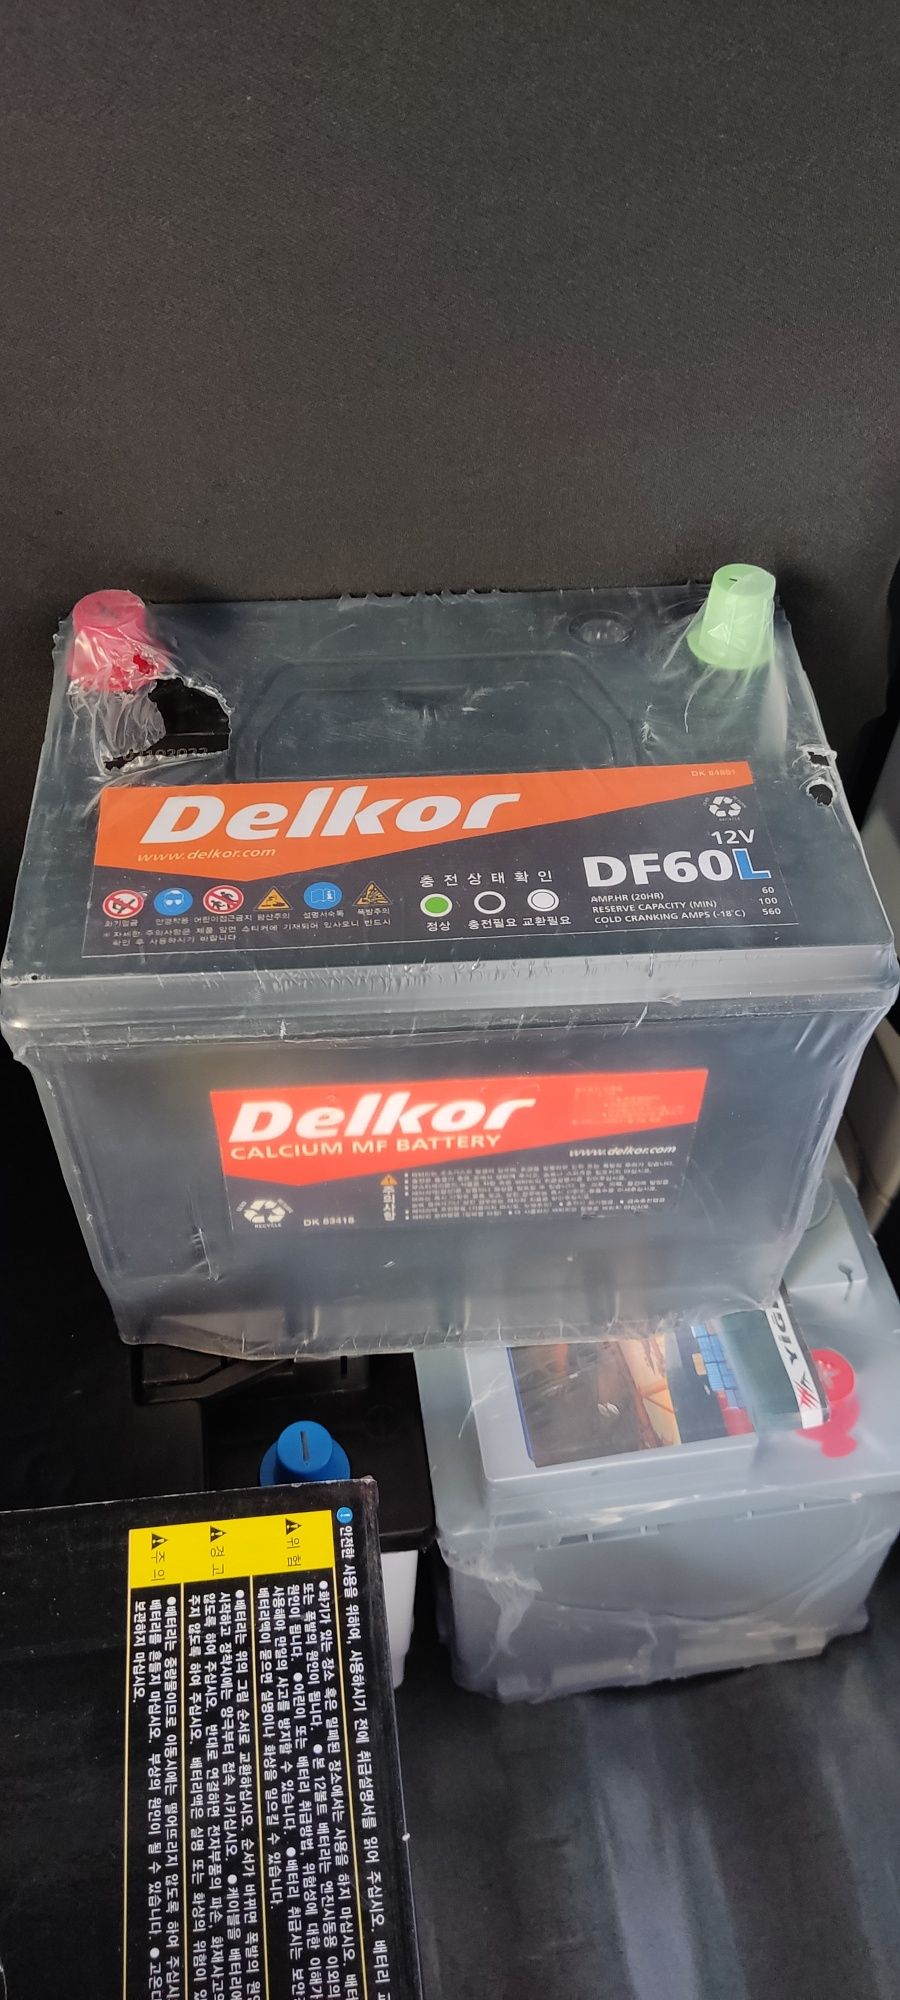 Delkor DF60L-R dastavka 24 7 mavjud